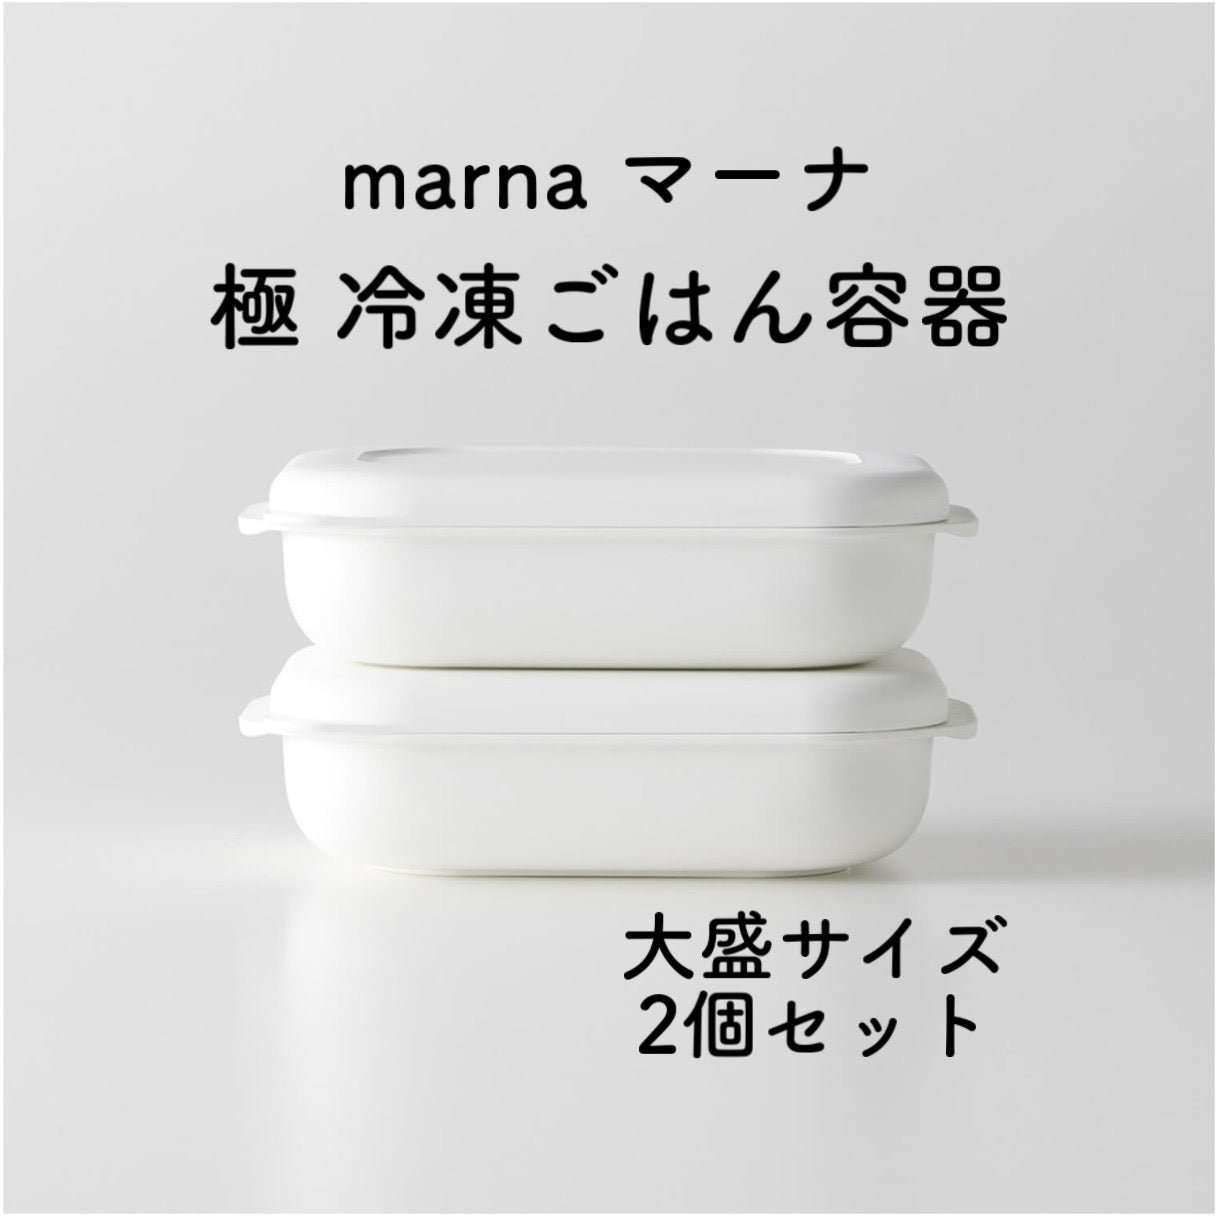 【2個セット】marna マーナ 極 冷凍ごはん容器2個入り ホワイト K748W 電子レンジ 食器洗い乾燥機OK